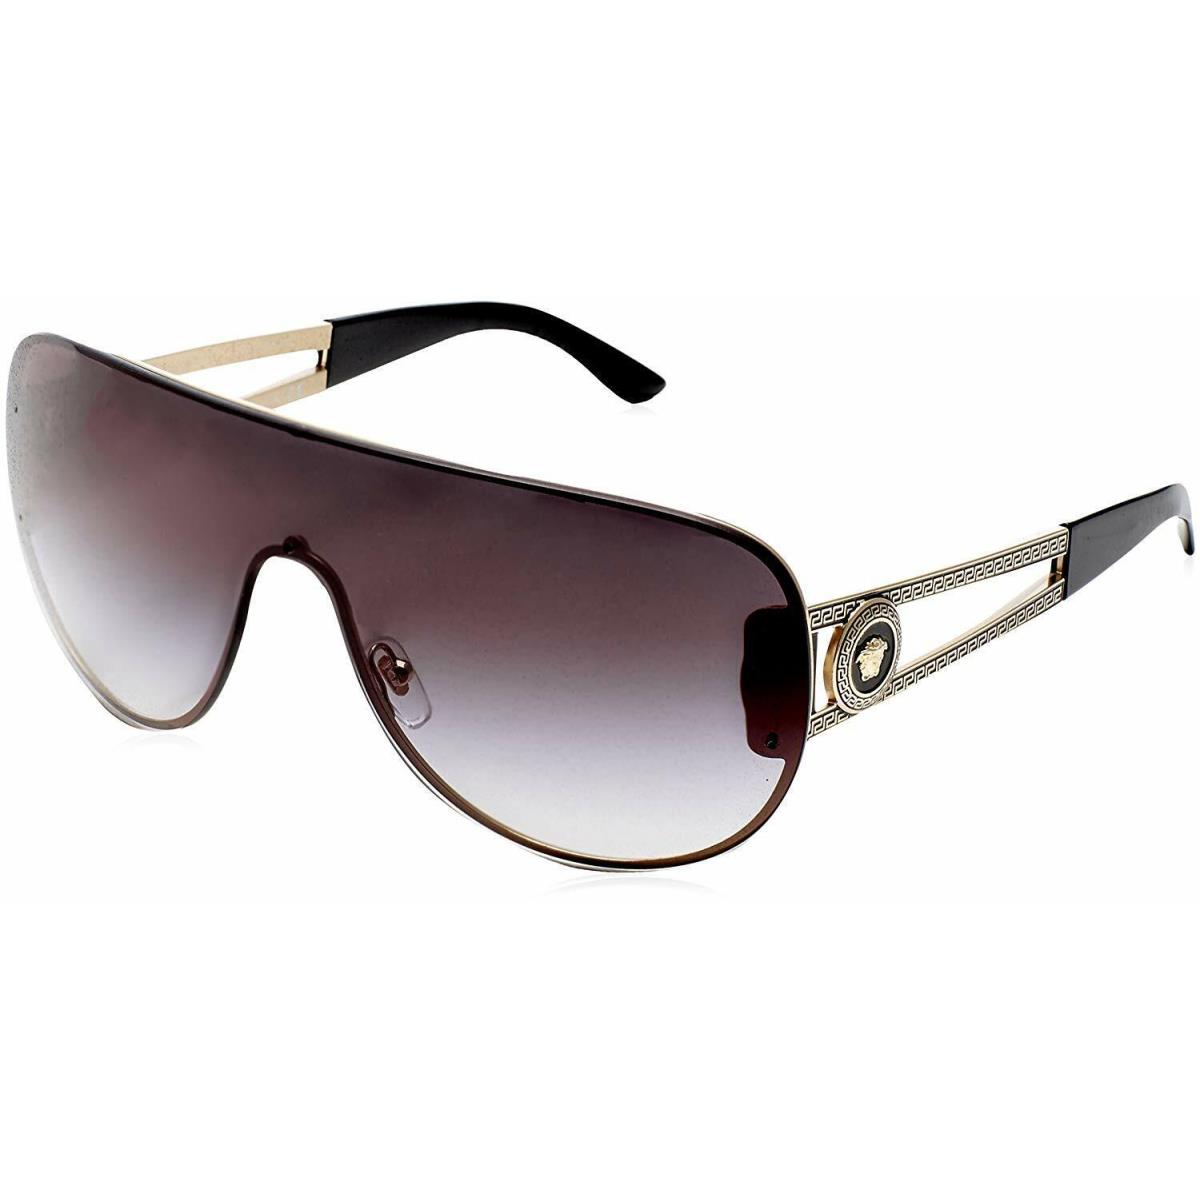 Versace VE2166 12528G Pilot Sunglasses Pale Gold / Grey Gradient Lens ...